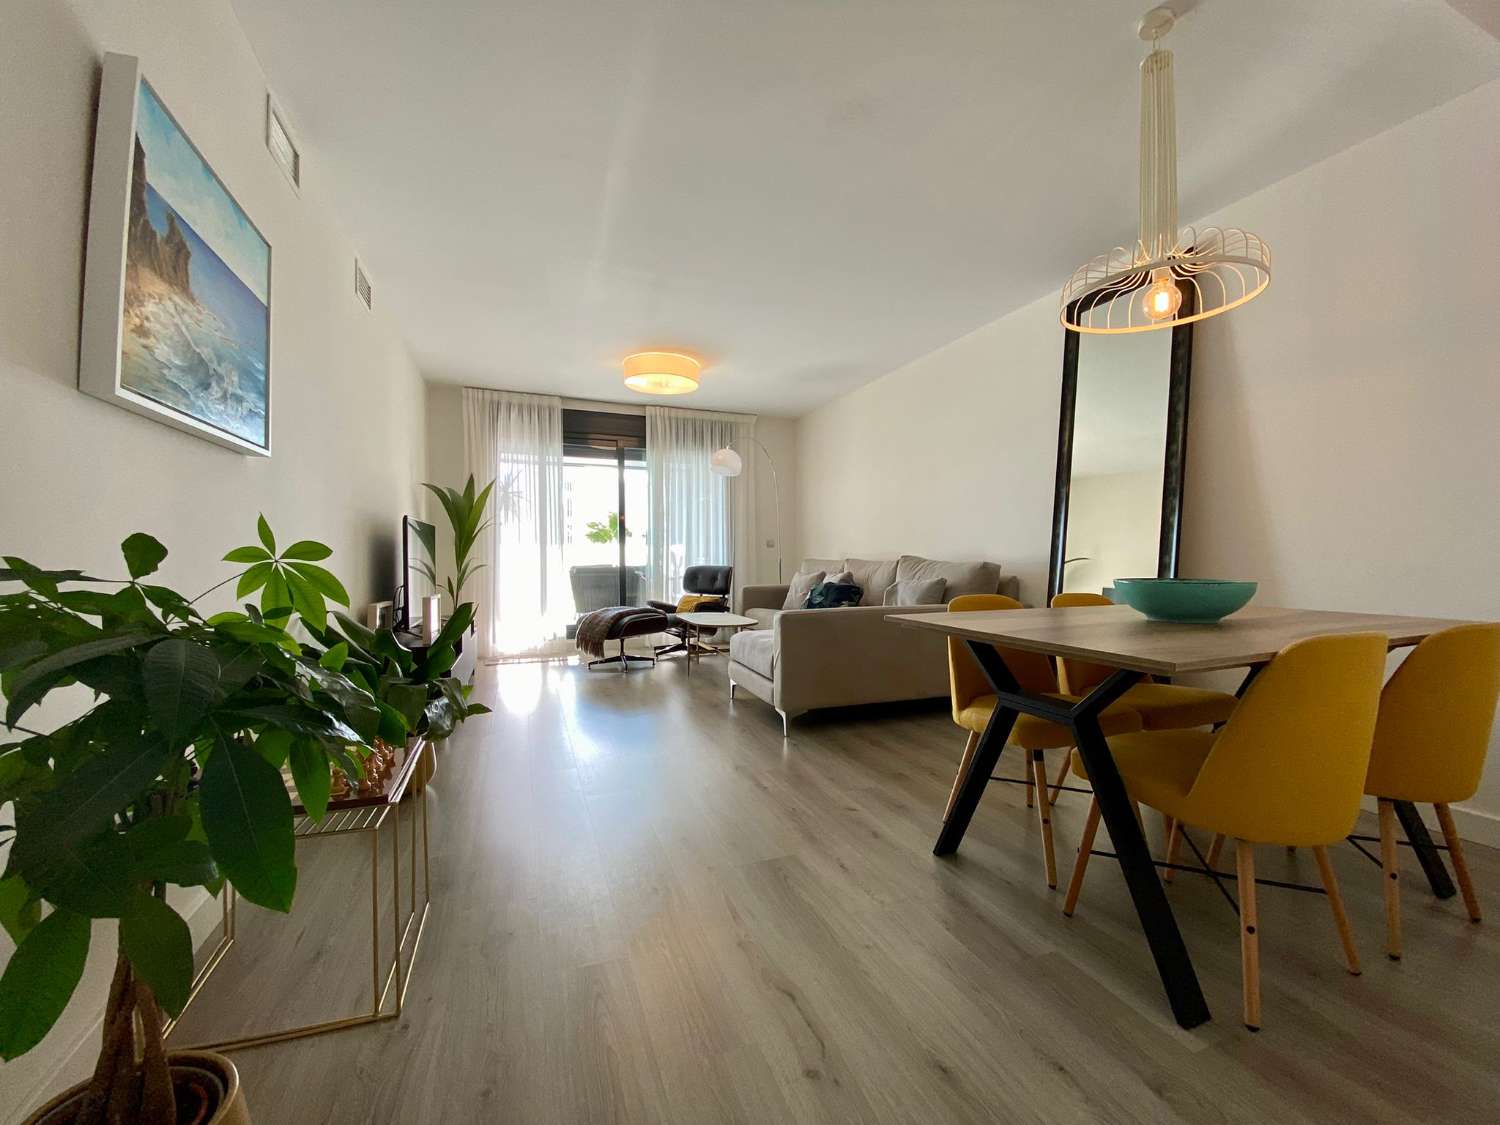 Apartment mit zwei Schlafzimmern, Terrasse und Gemeinschaftspool neben dem Strand von Puerto de la Caleta, verfügbar für den Winter